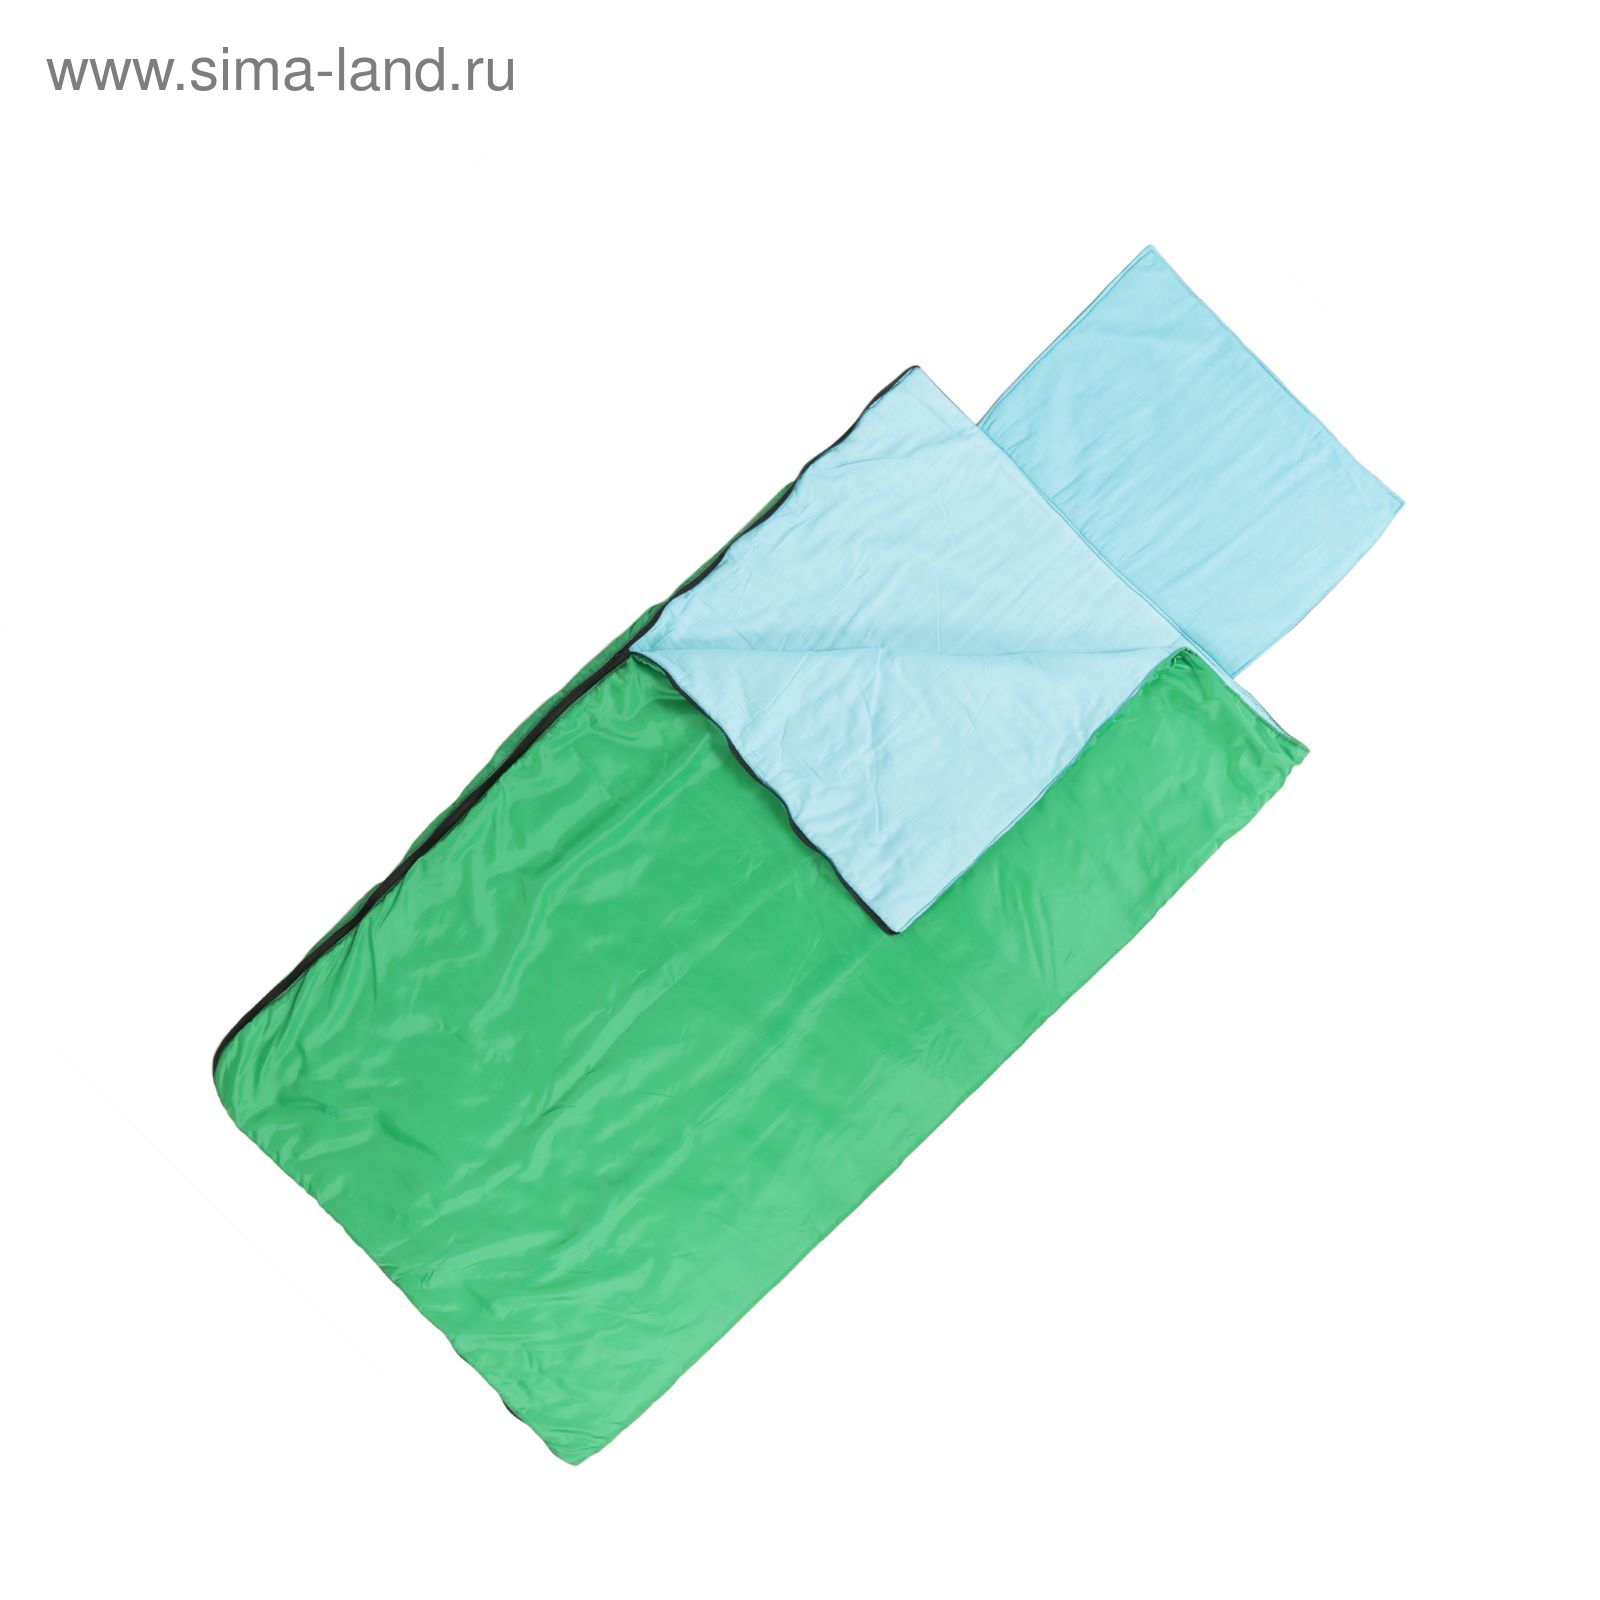 Спальный мешок "Комфорт", 2-х слойный, увеличенный, размер 230 х 105 см, цвет микс